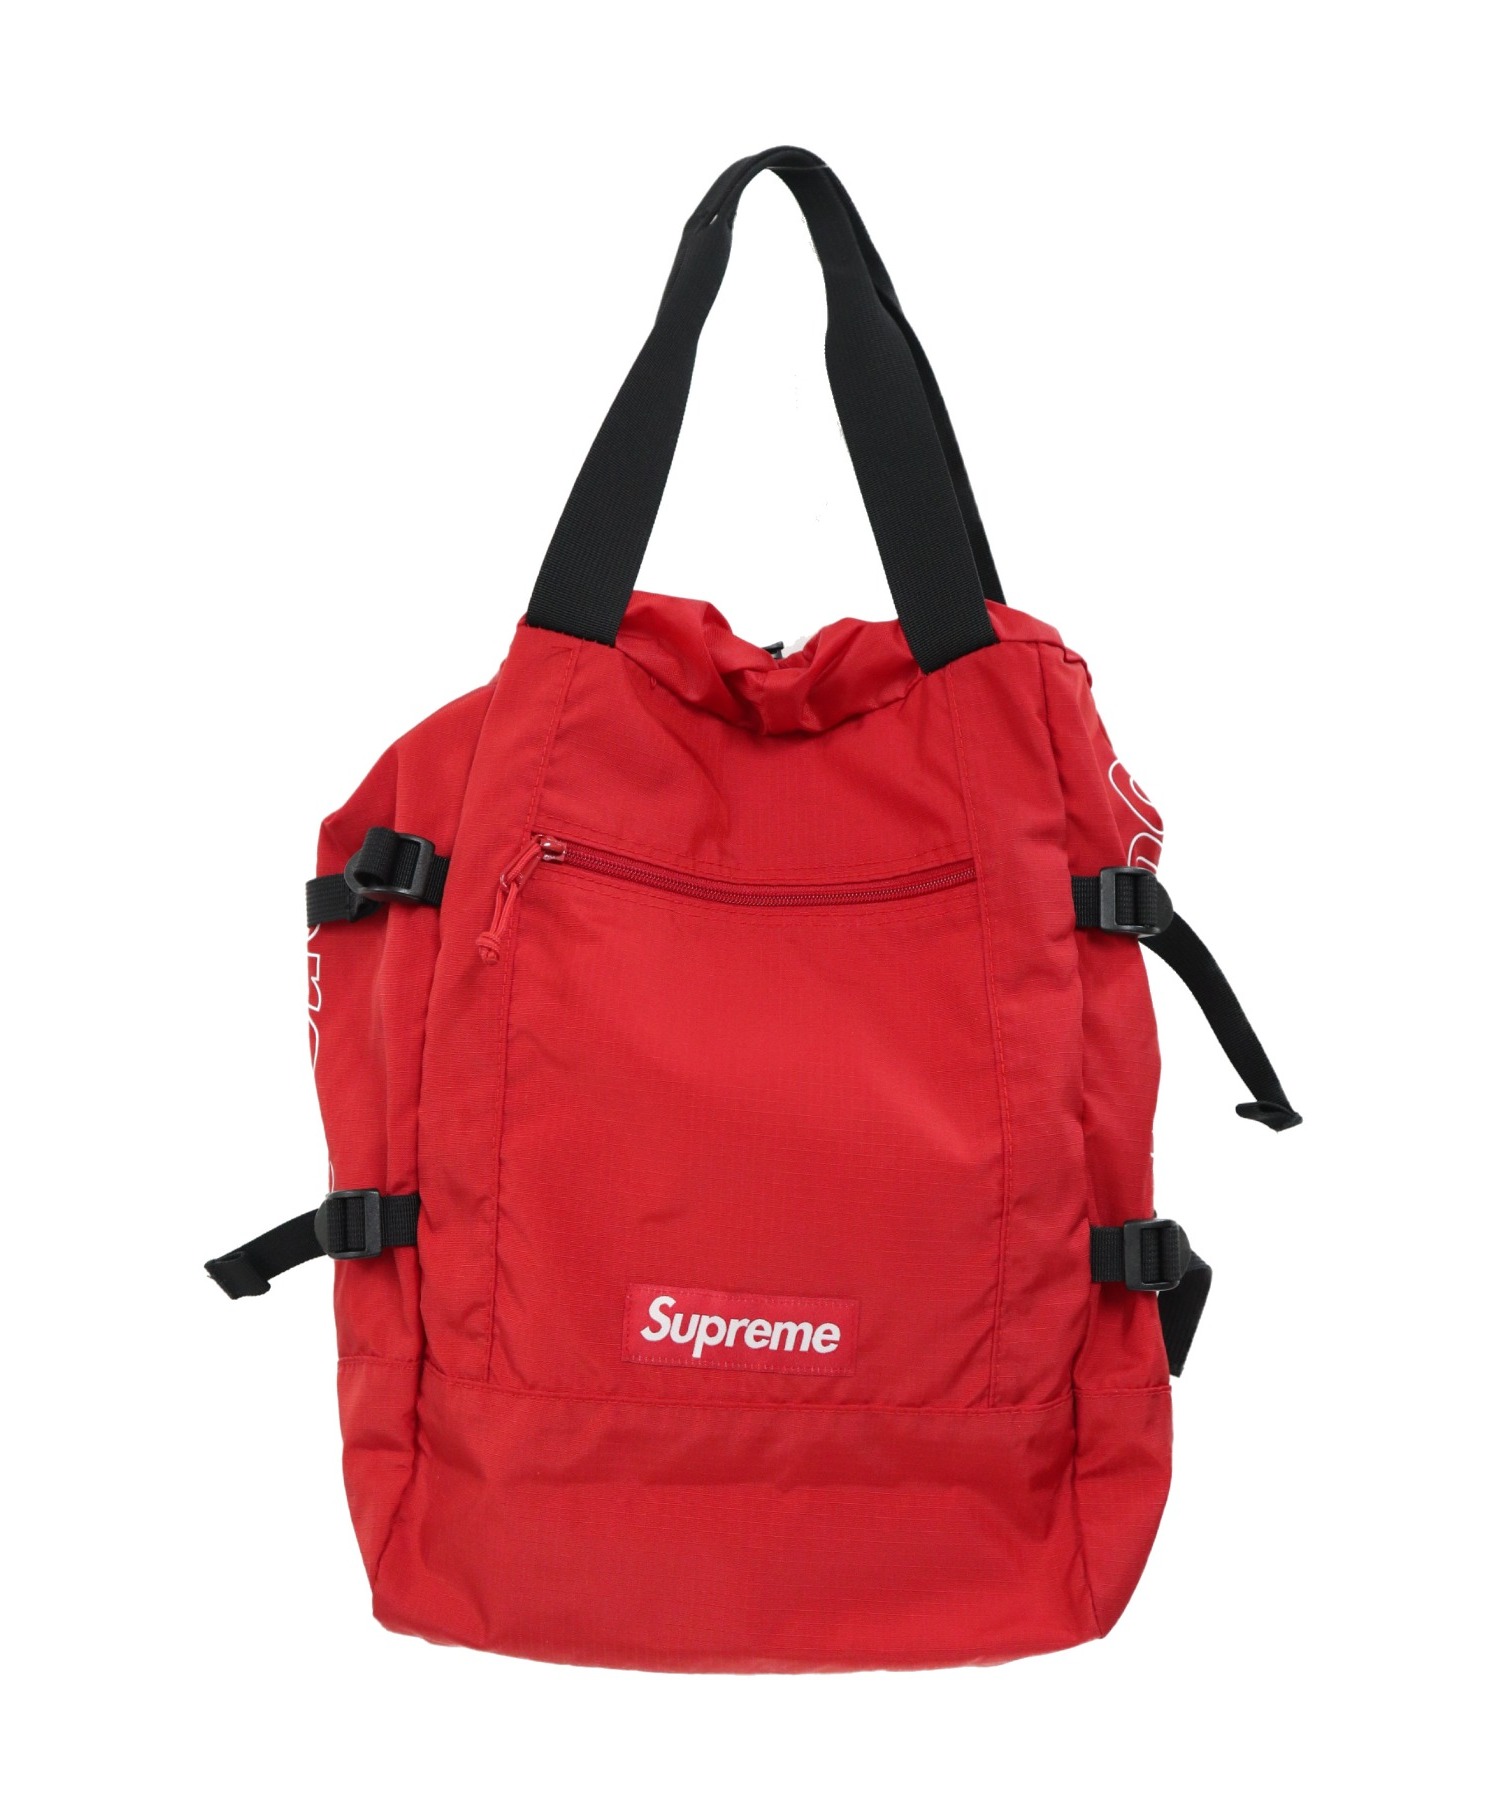 Supreme (シュプリーム) 2WAYトートバックパック レッド サイズ:下記参照 19SS 2way Tote Backpack